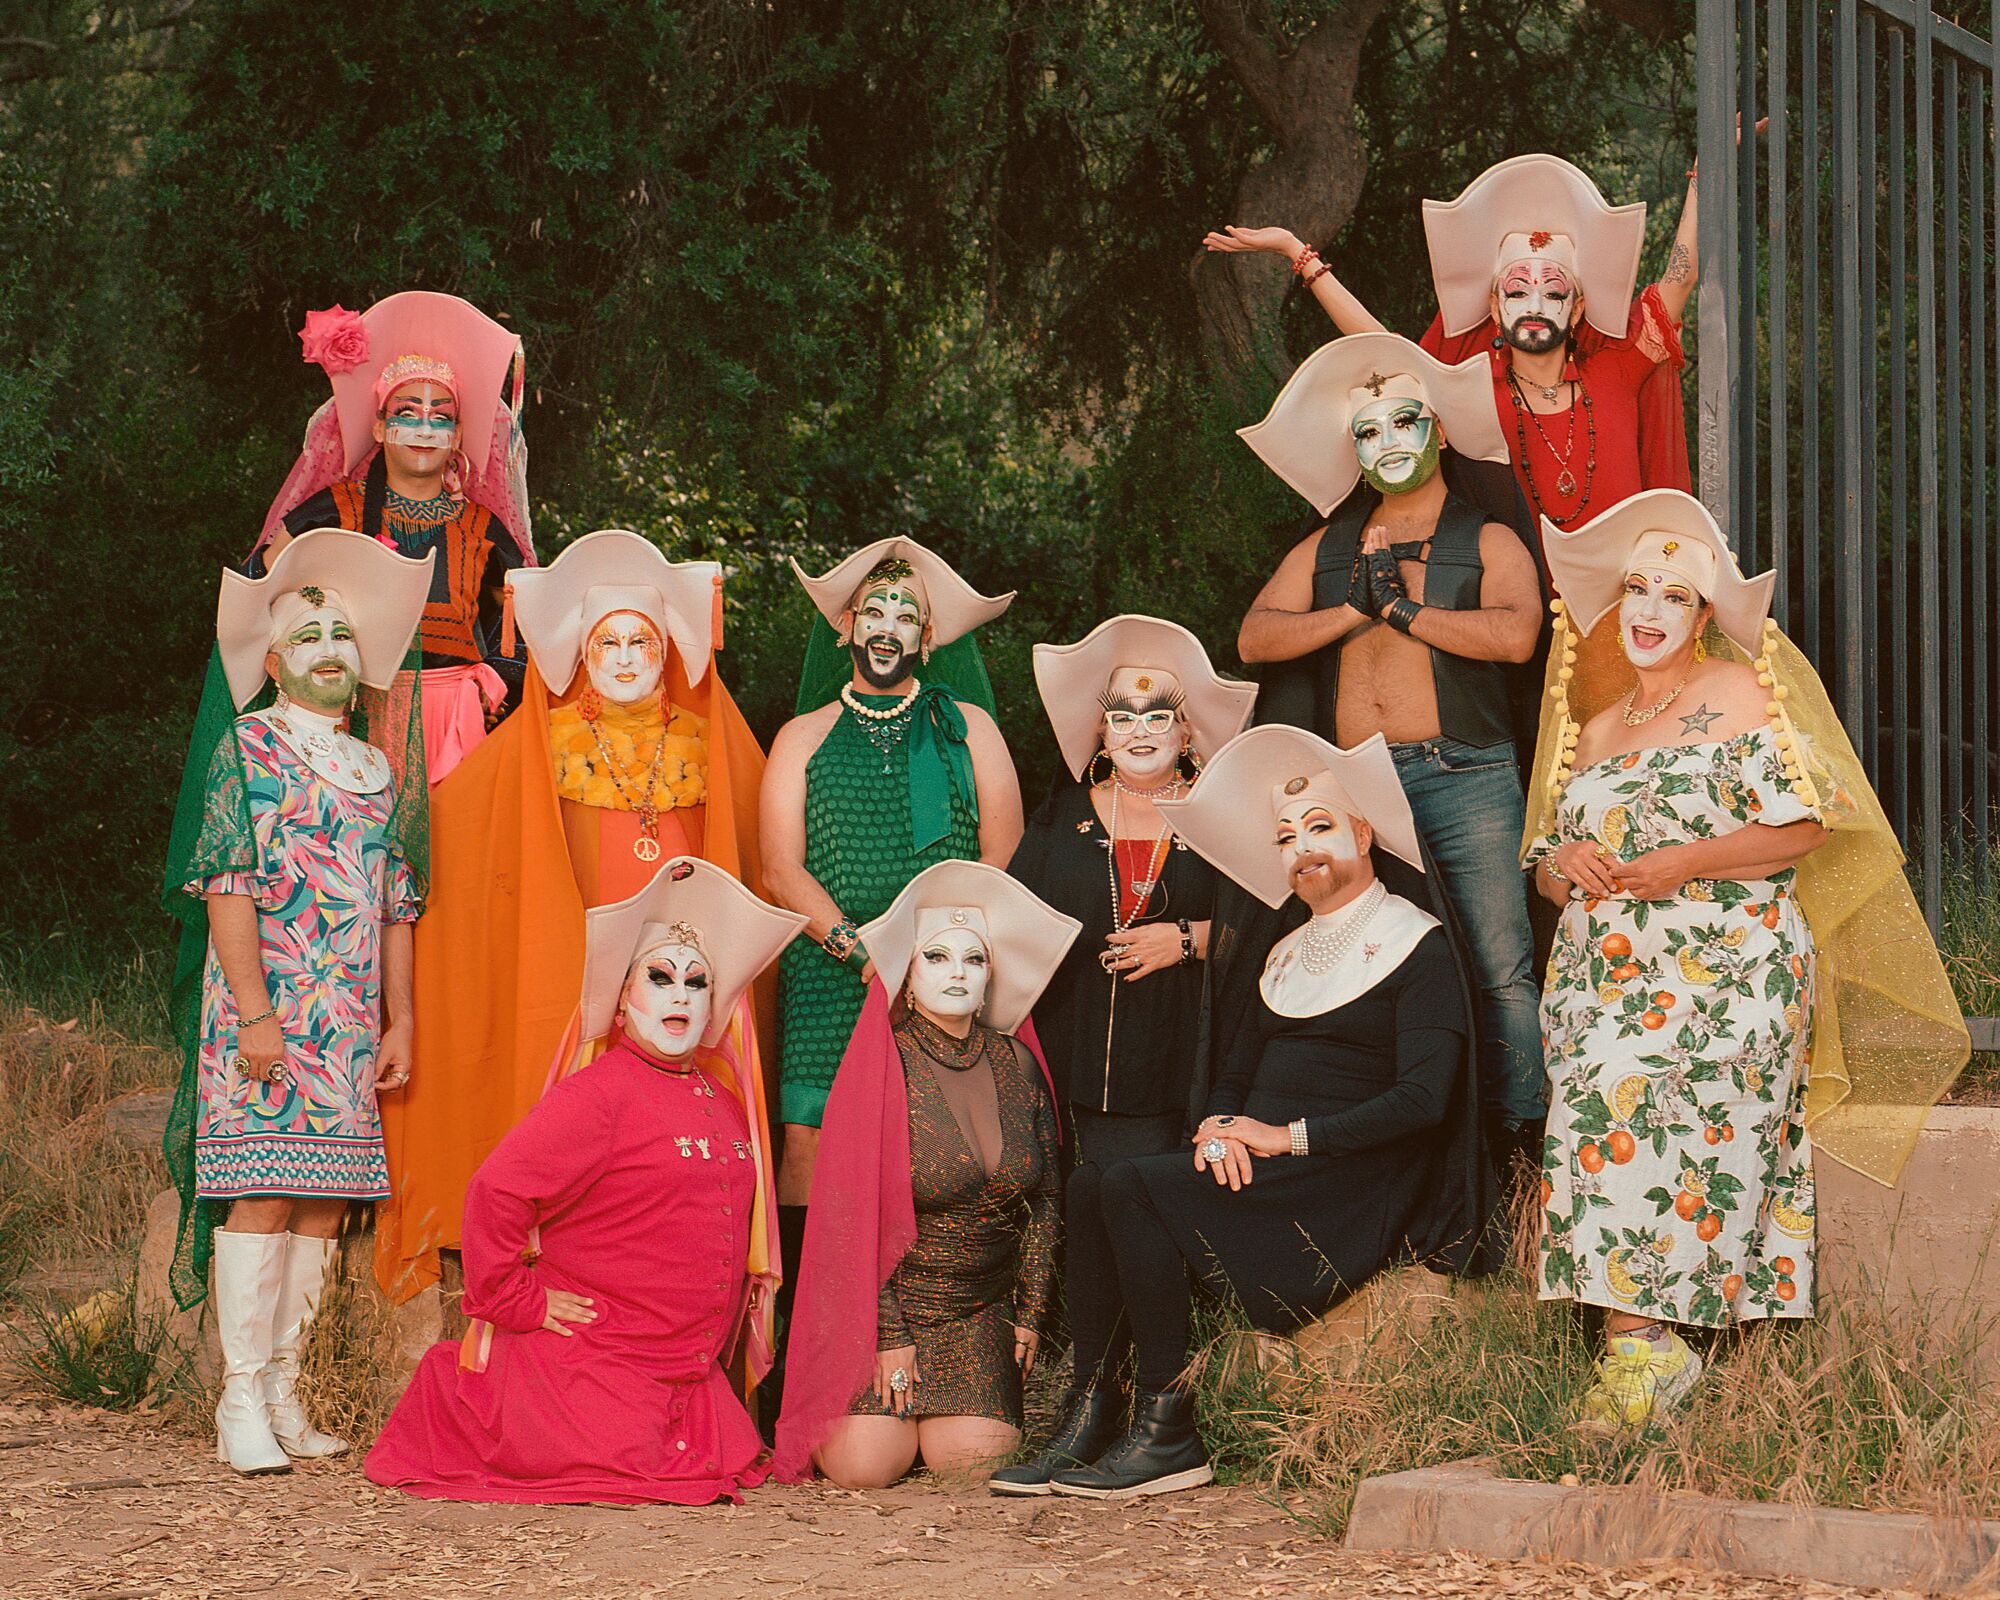 Gruppenporträt der Sisterhood of Perpetual Indulgence, einer Gruppe von Drag-Nonnen, im Freien.